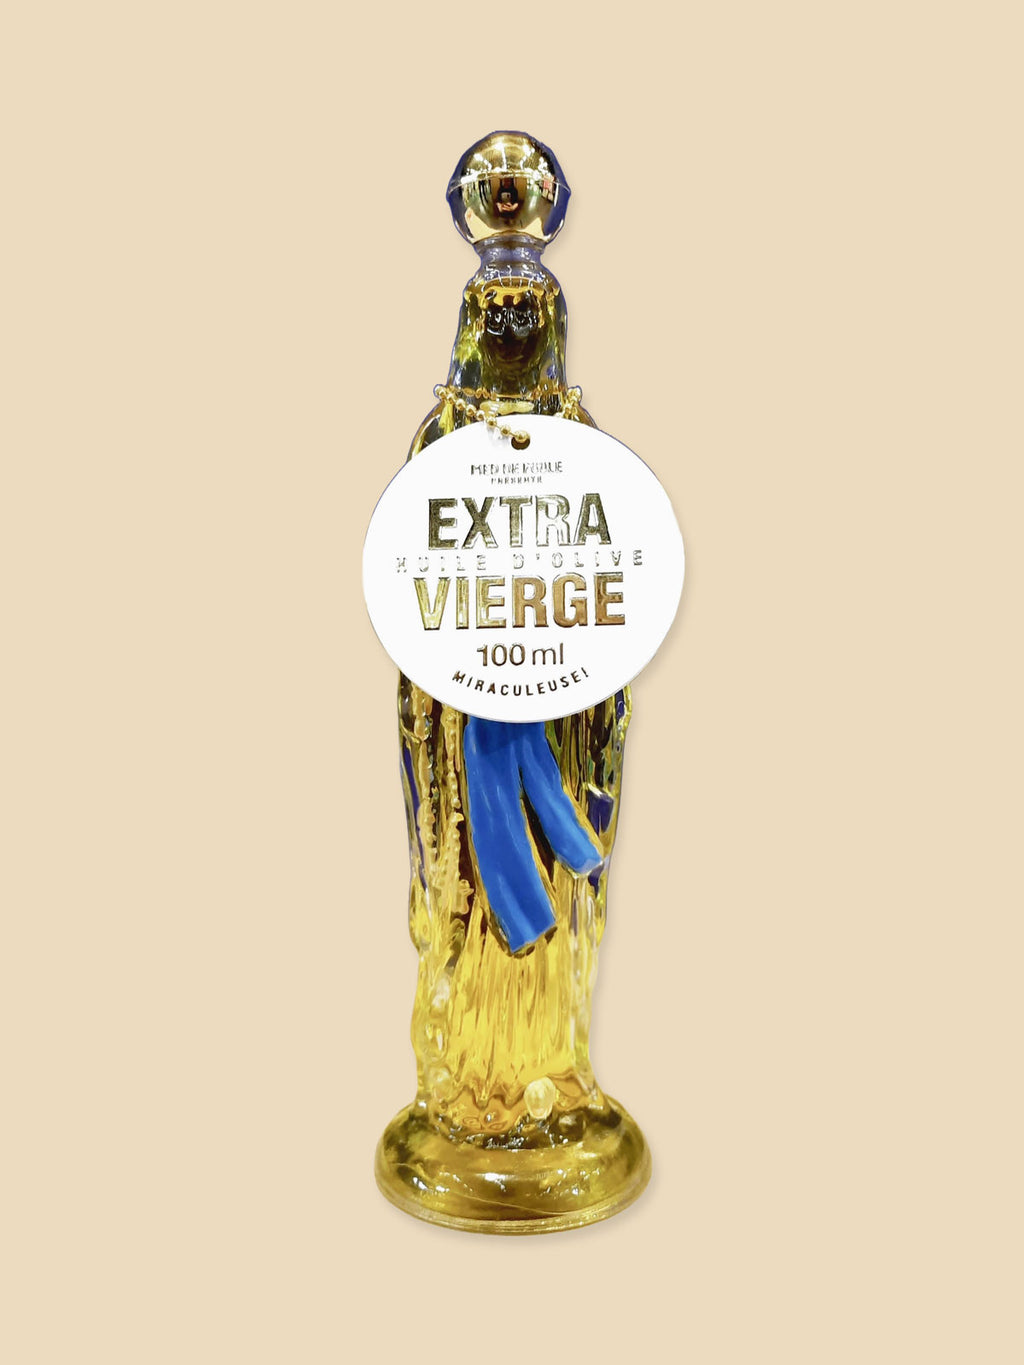 Extra Virgin Olive Oil - Virgin Mary Bottle - 100ml